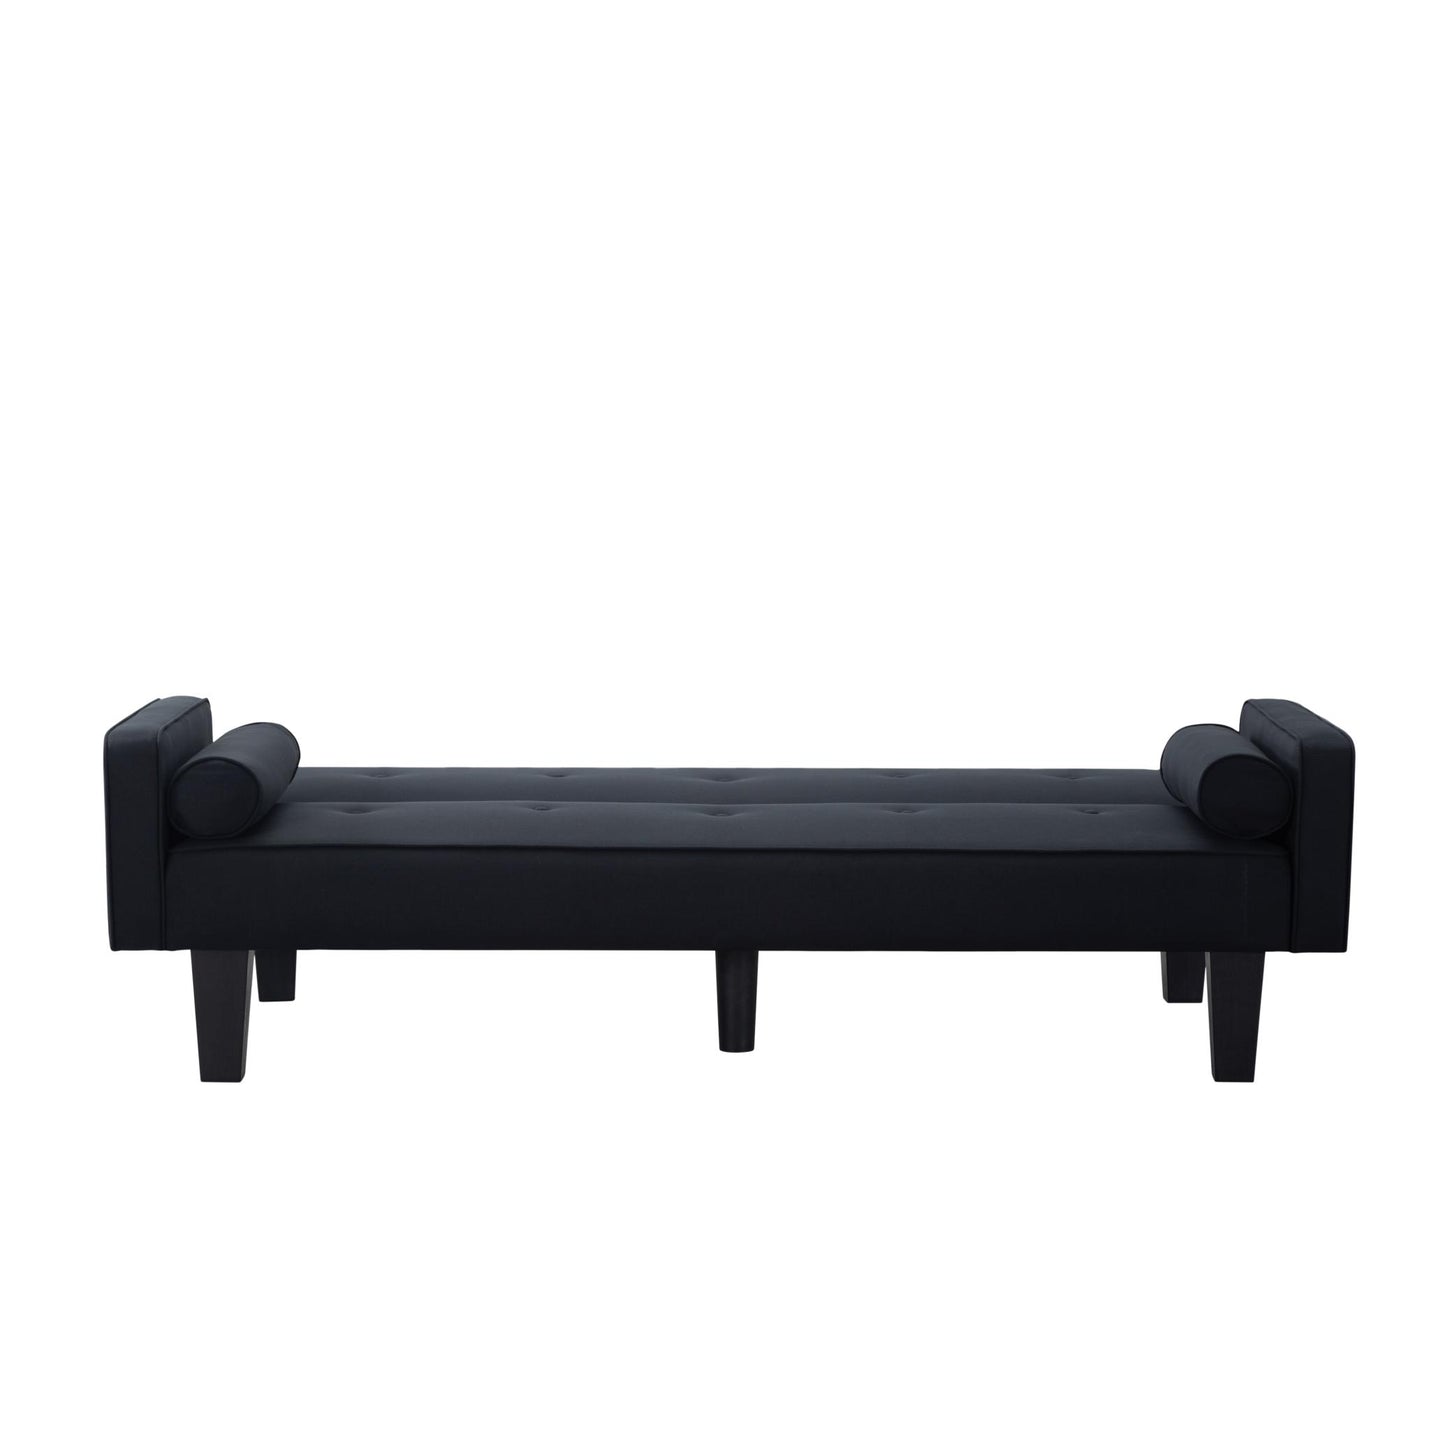 71.3” Futon Sofa bed